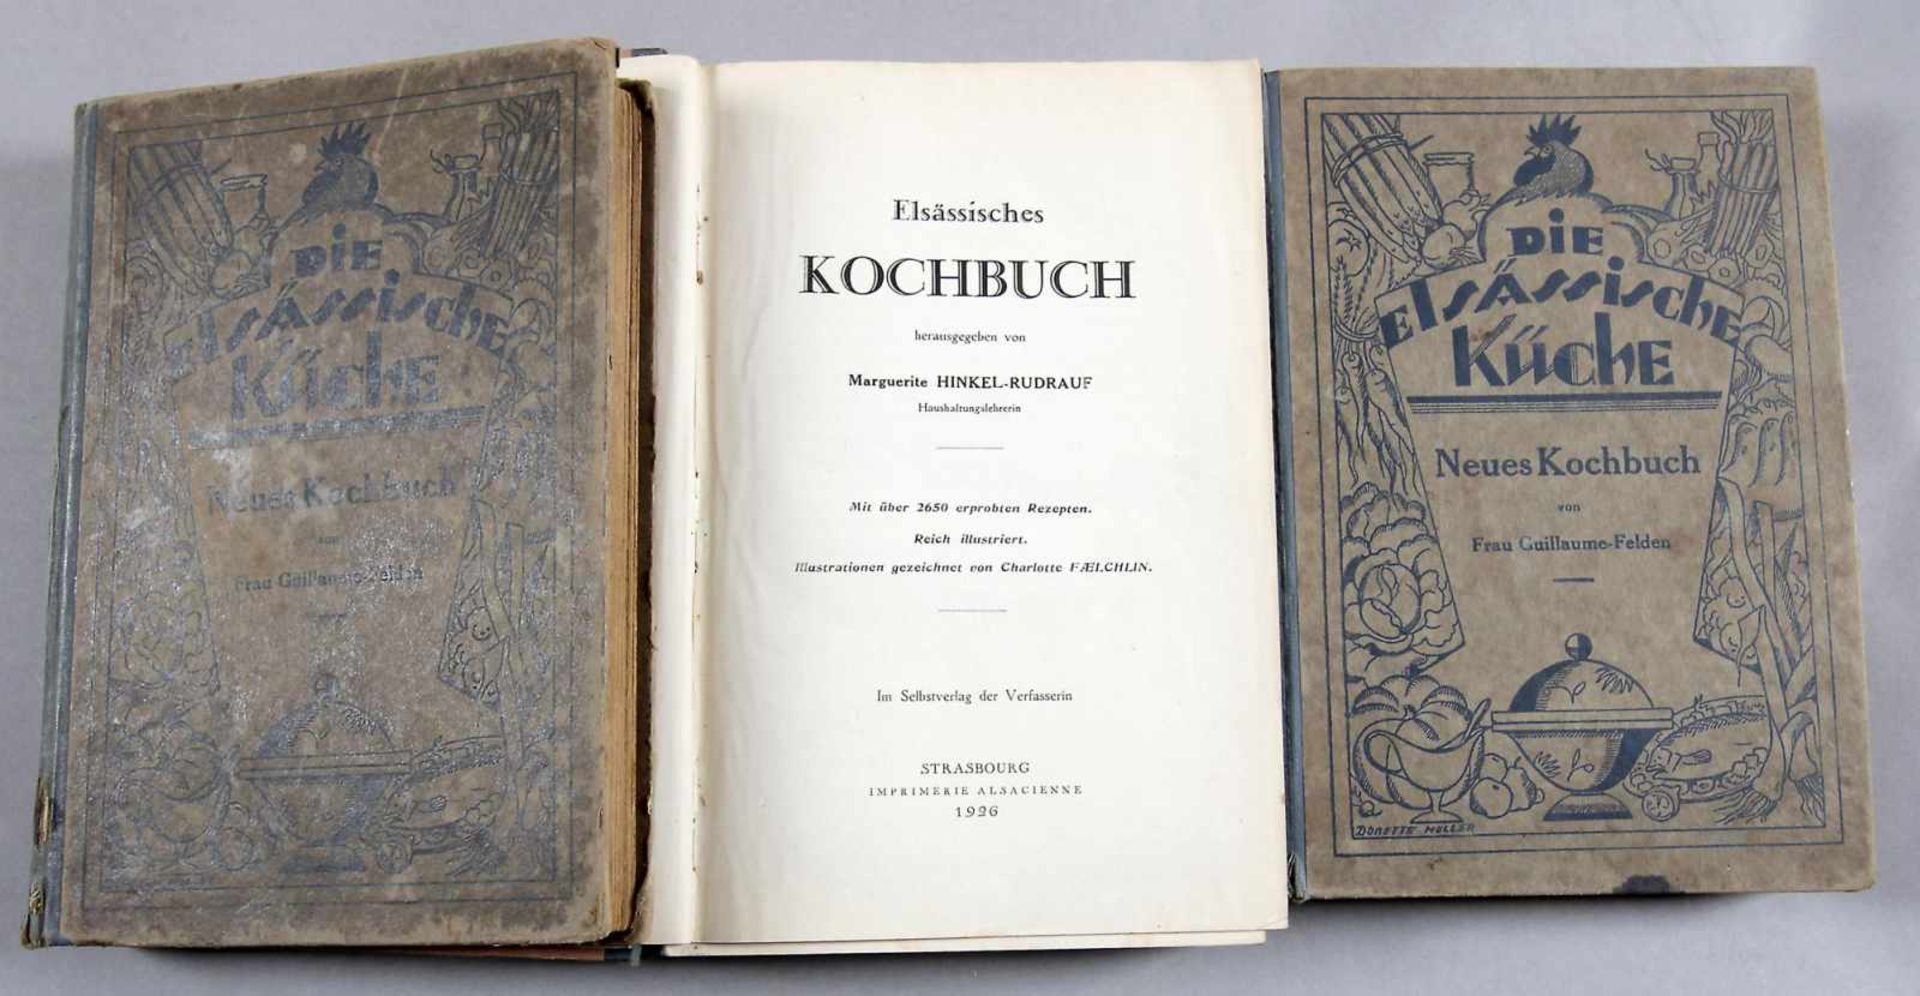 Konvolut von 3 elsässischen Kochbüchern- Marguerite Hinkel-Rudrauf: "Elsässisches Kochbuch",